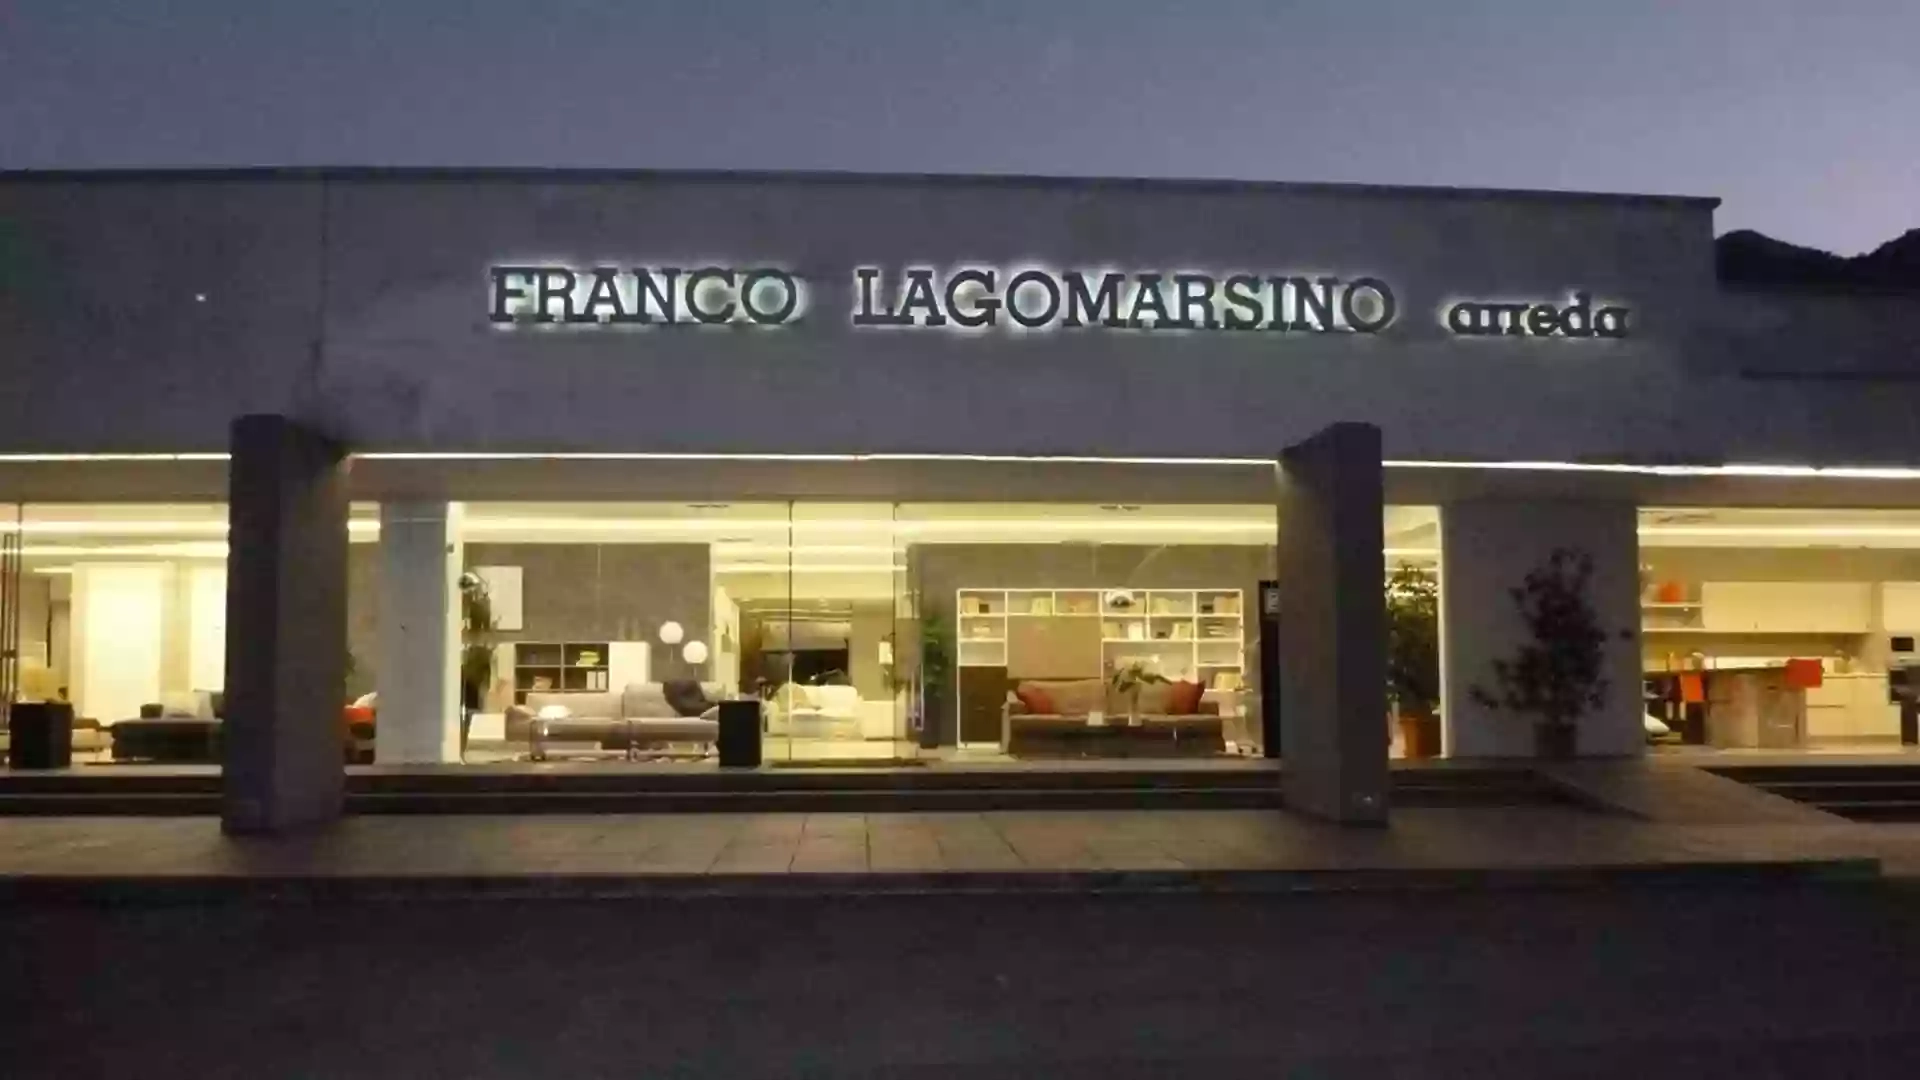 Franco Lagomarsino Arreda